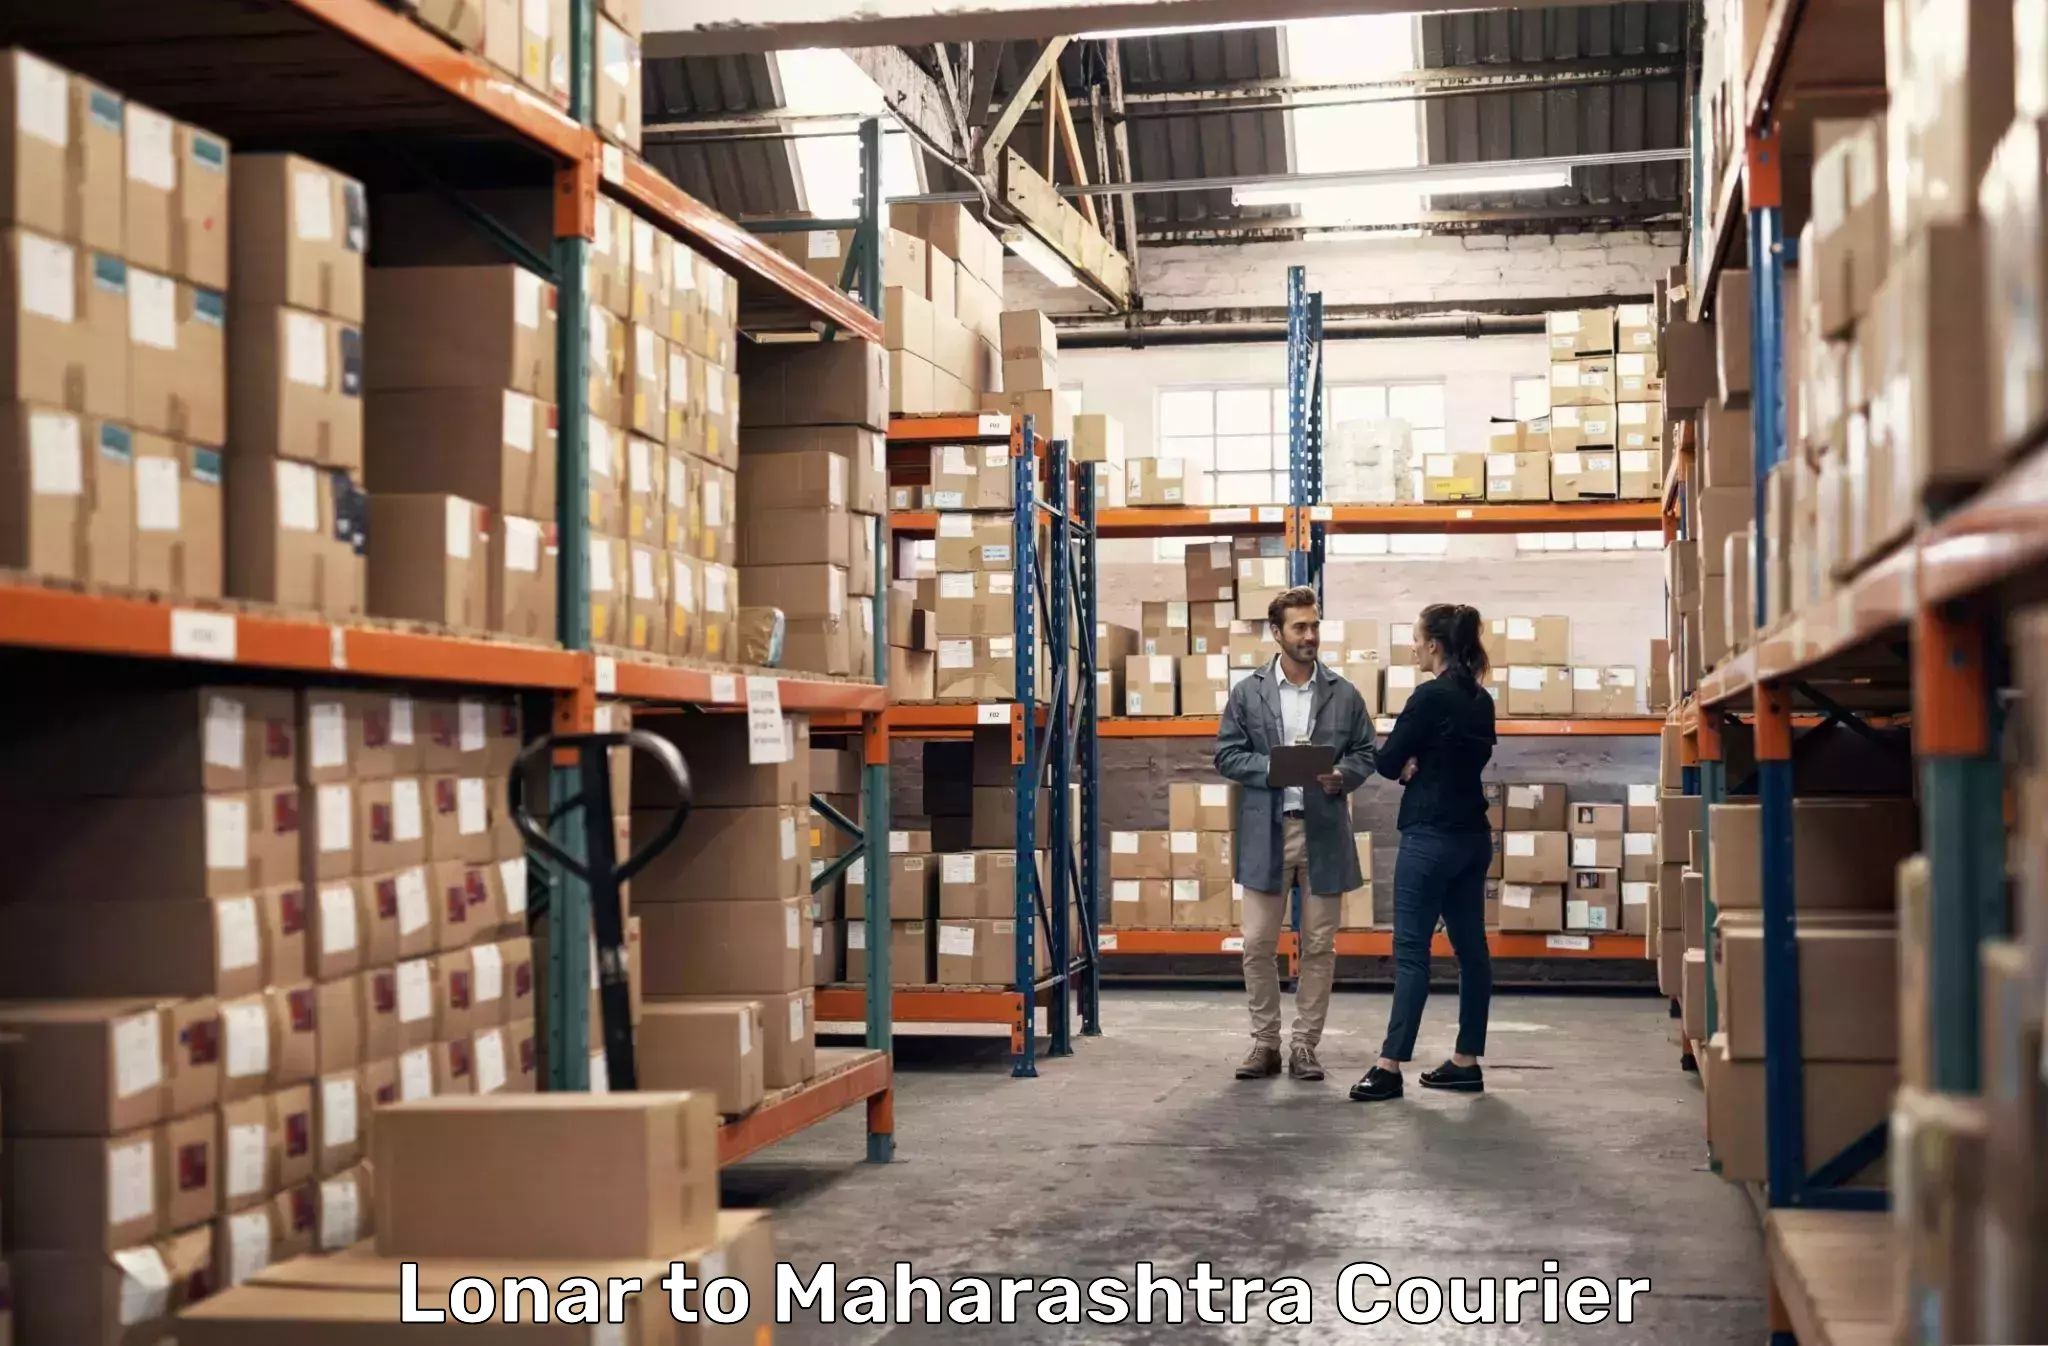 Global courier networks Lonar to Aurangabad